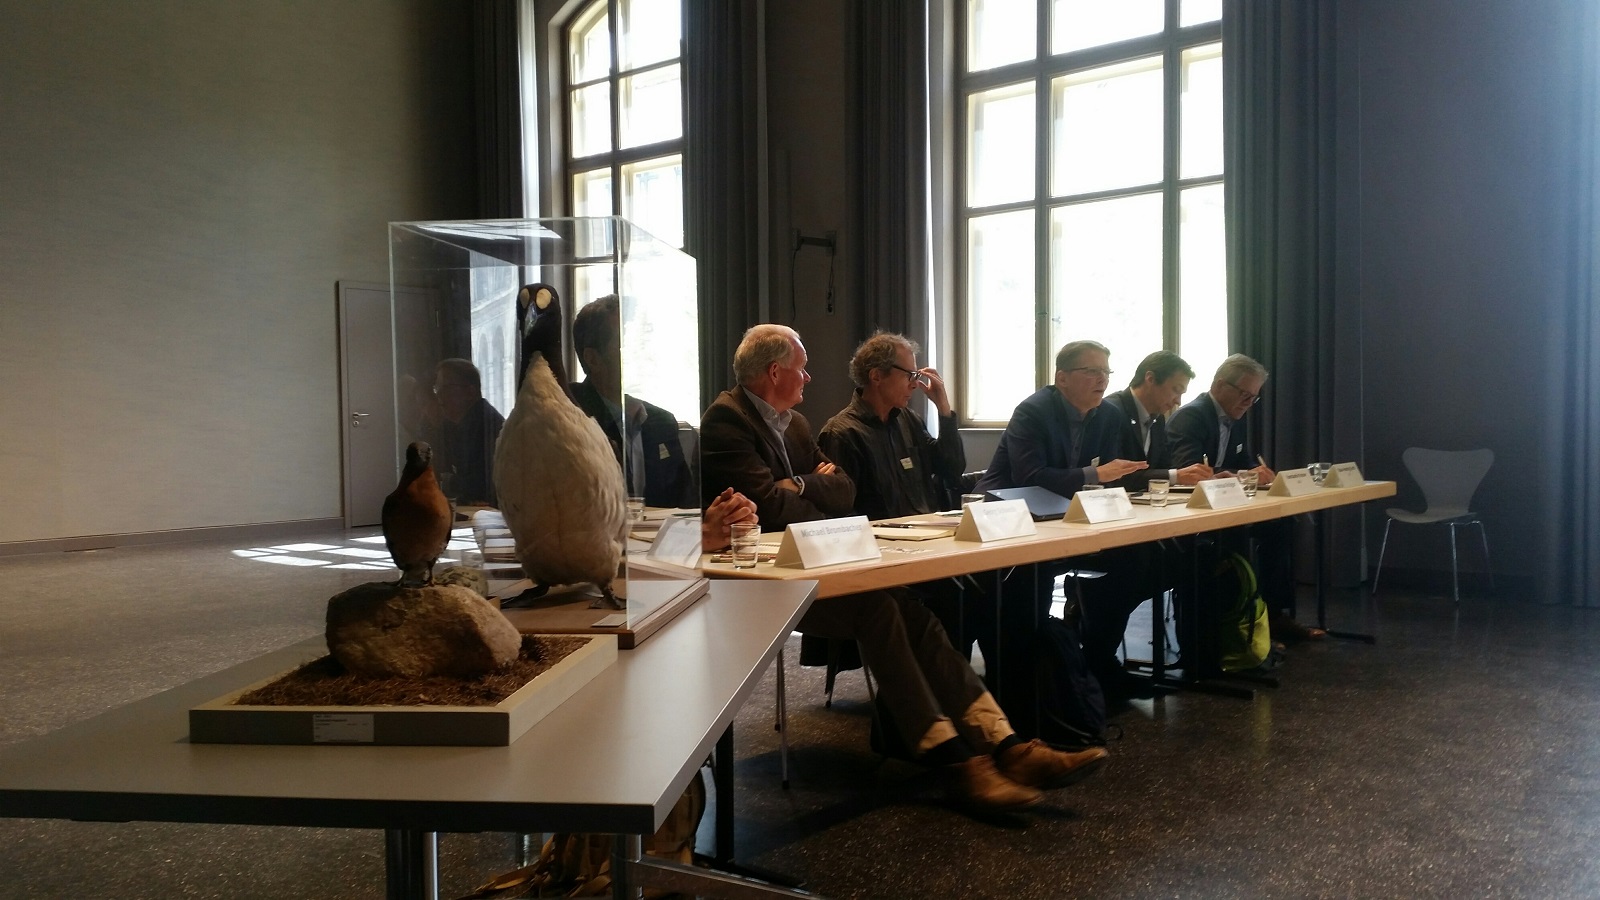 Bild der Pressekonferenz im Naturkundemuseum zu Berlin. Die Experten aus Umweltverbänden mit ausgestellten Vögeln im Vordergrund.